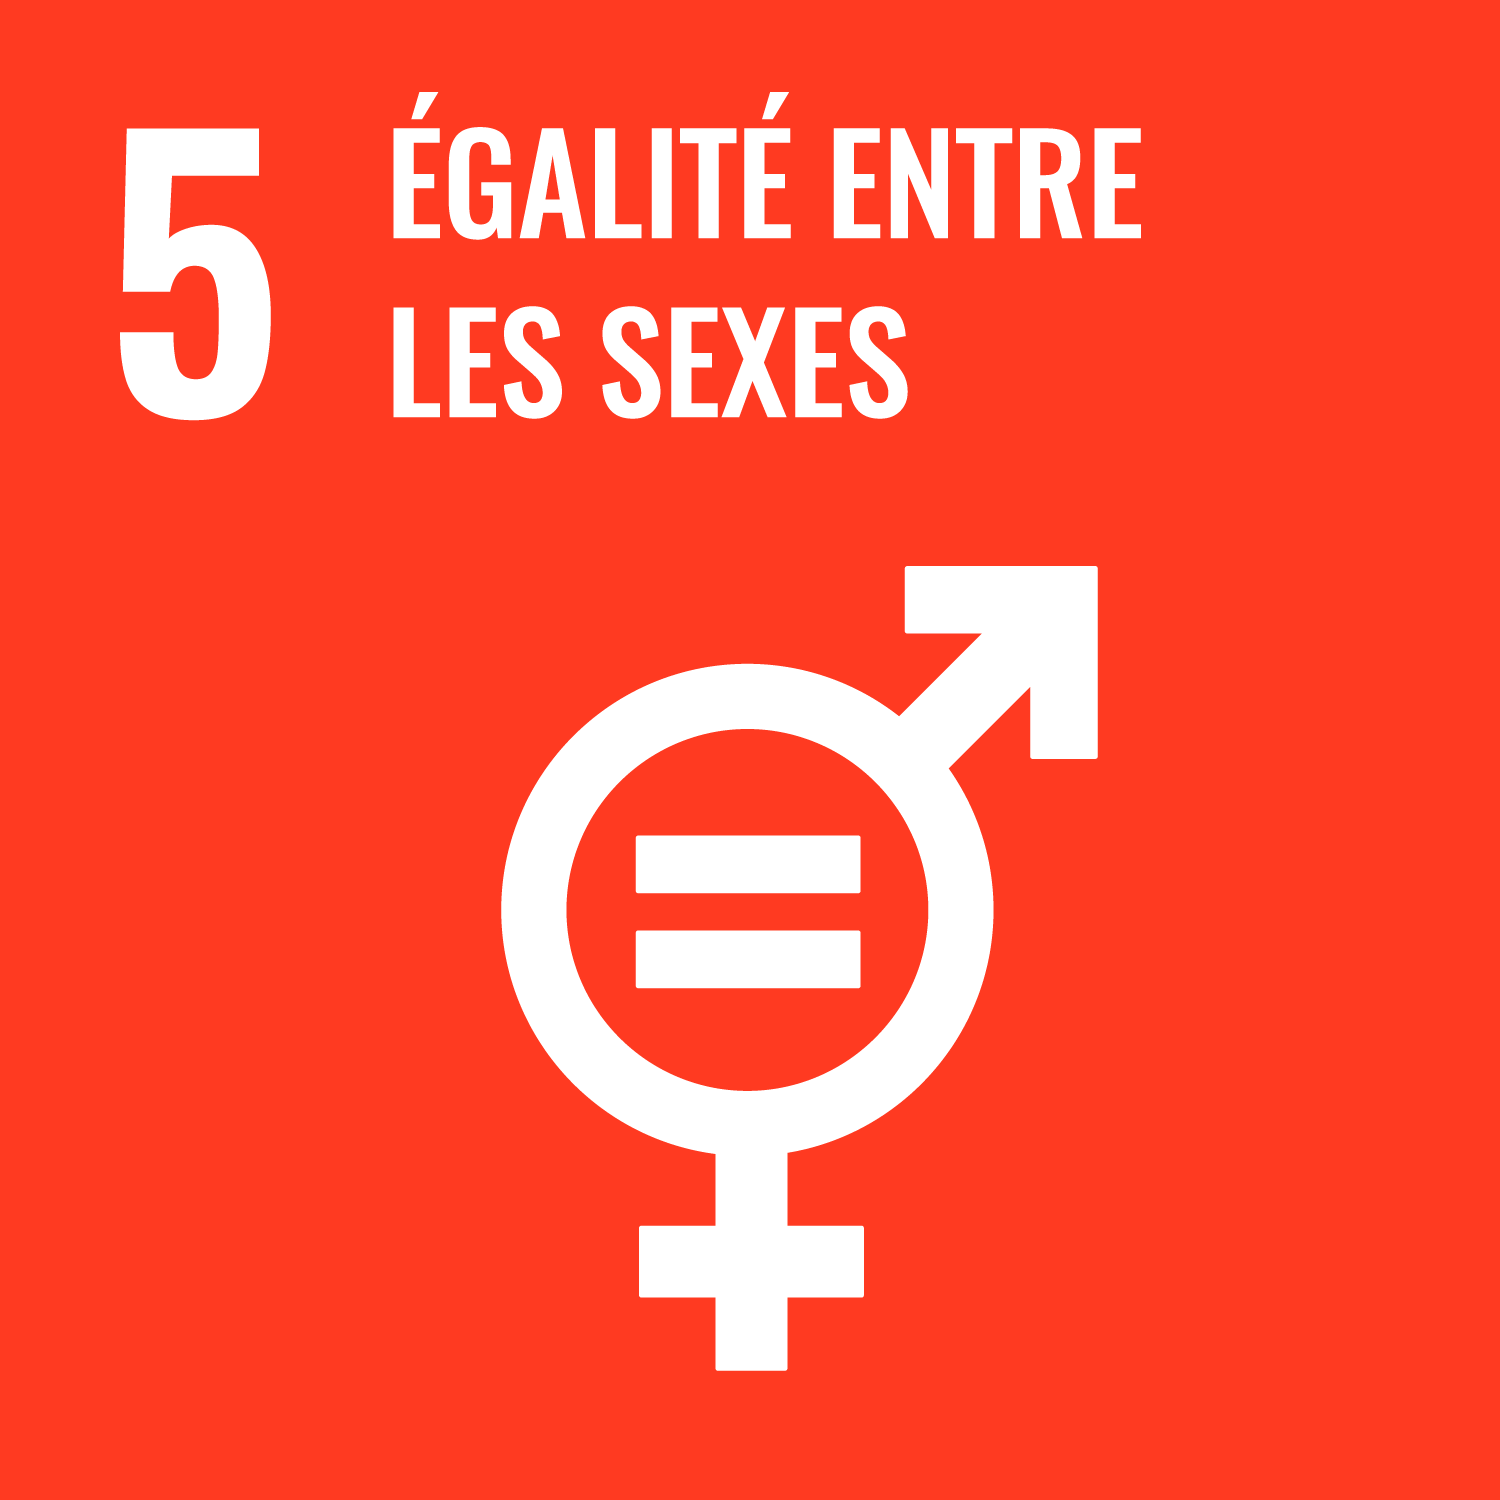 Objectif 5 - Parvenir à l’égalité des sexes et autonomiser toutes les femmes et les filles